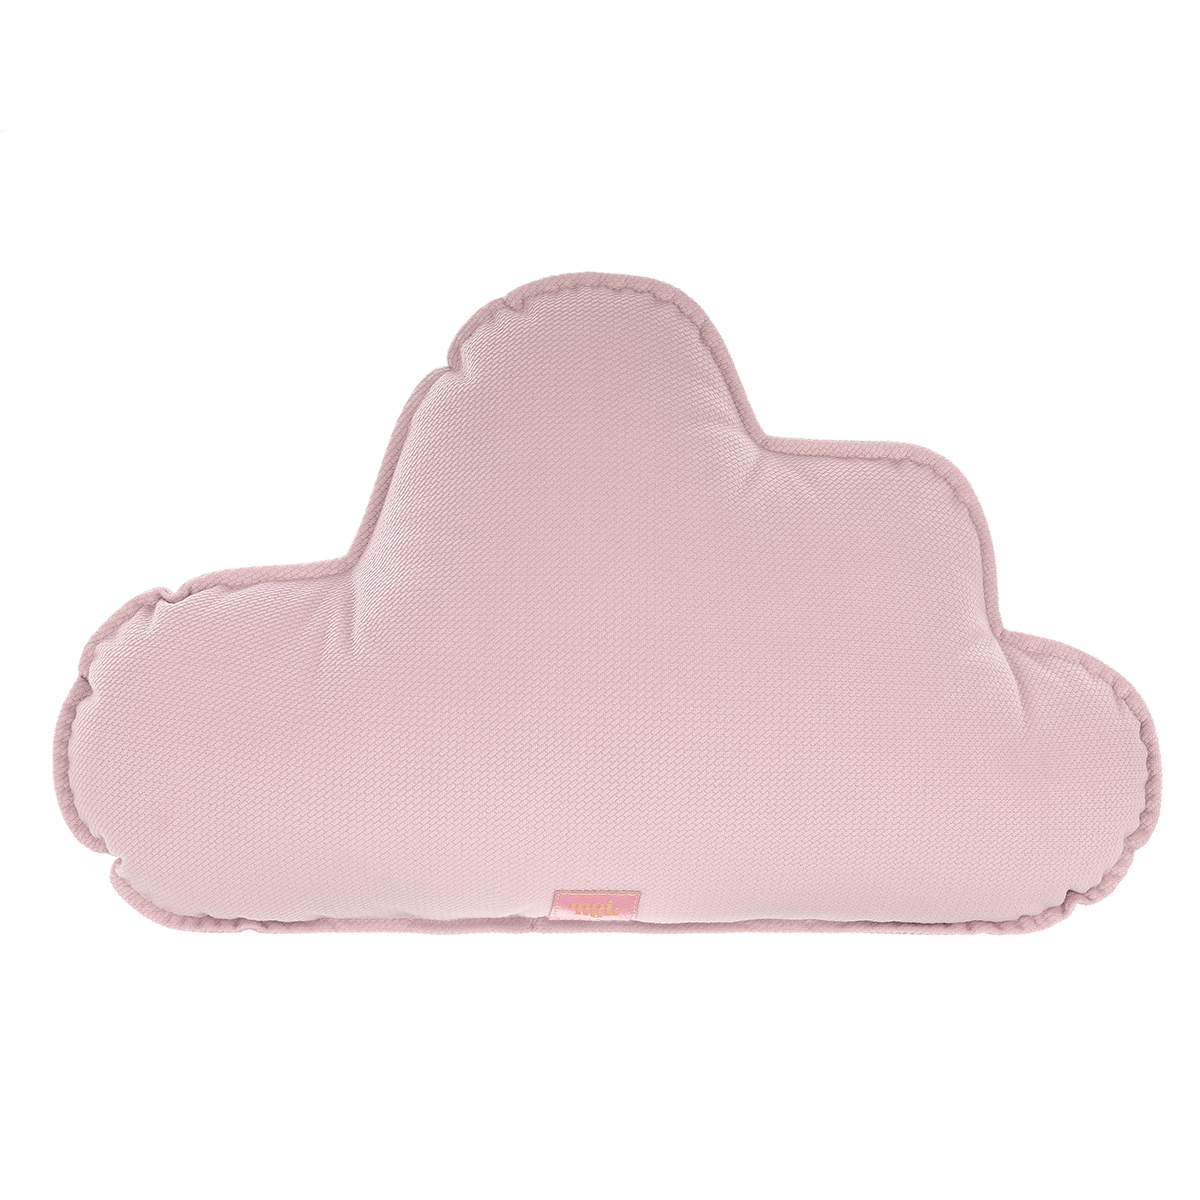 Velvet "Powder pink" Cloud Pillow